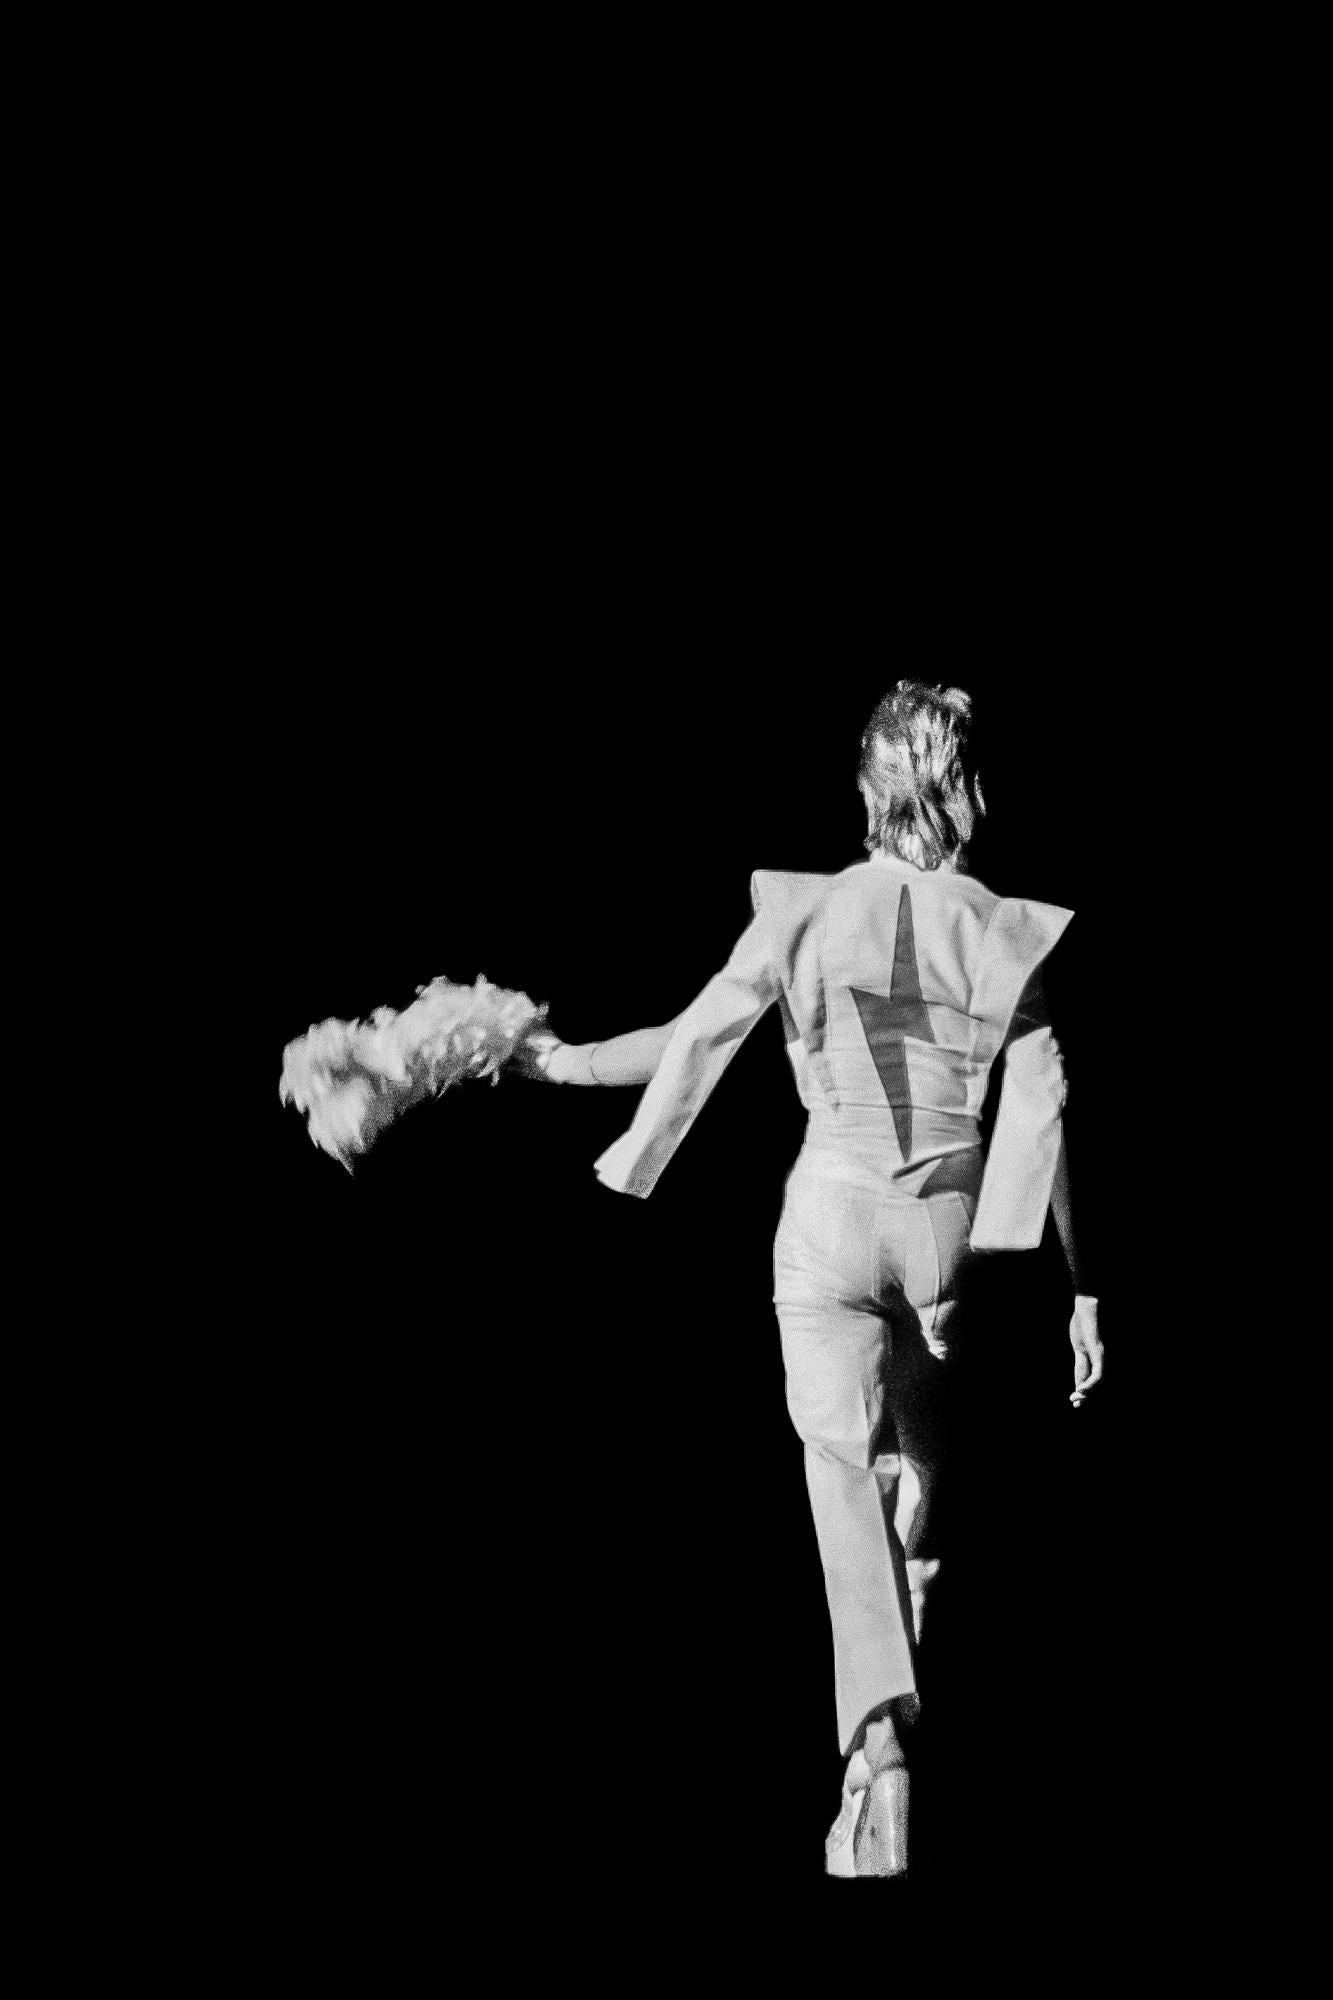 Kunstdruck von David Bowie von einem renommierten Fotografen. Lynn Goldsmith. Aufgenommen 1973 während der Tournee der Spiders from Mars, und jetzt zum ersten Mal in Schwarz-Weiß erhältlich.

Lynn Goldsmith fertigt nur 20 Abzüge ihrer Bilder an,